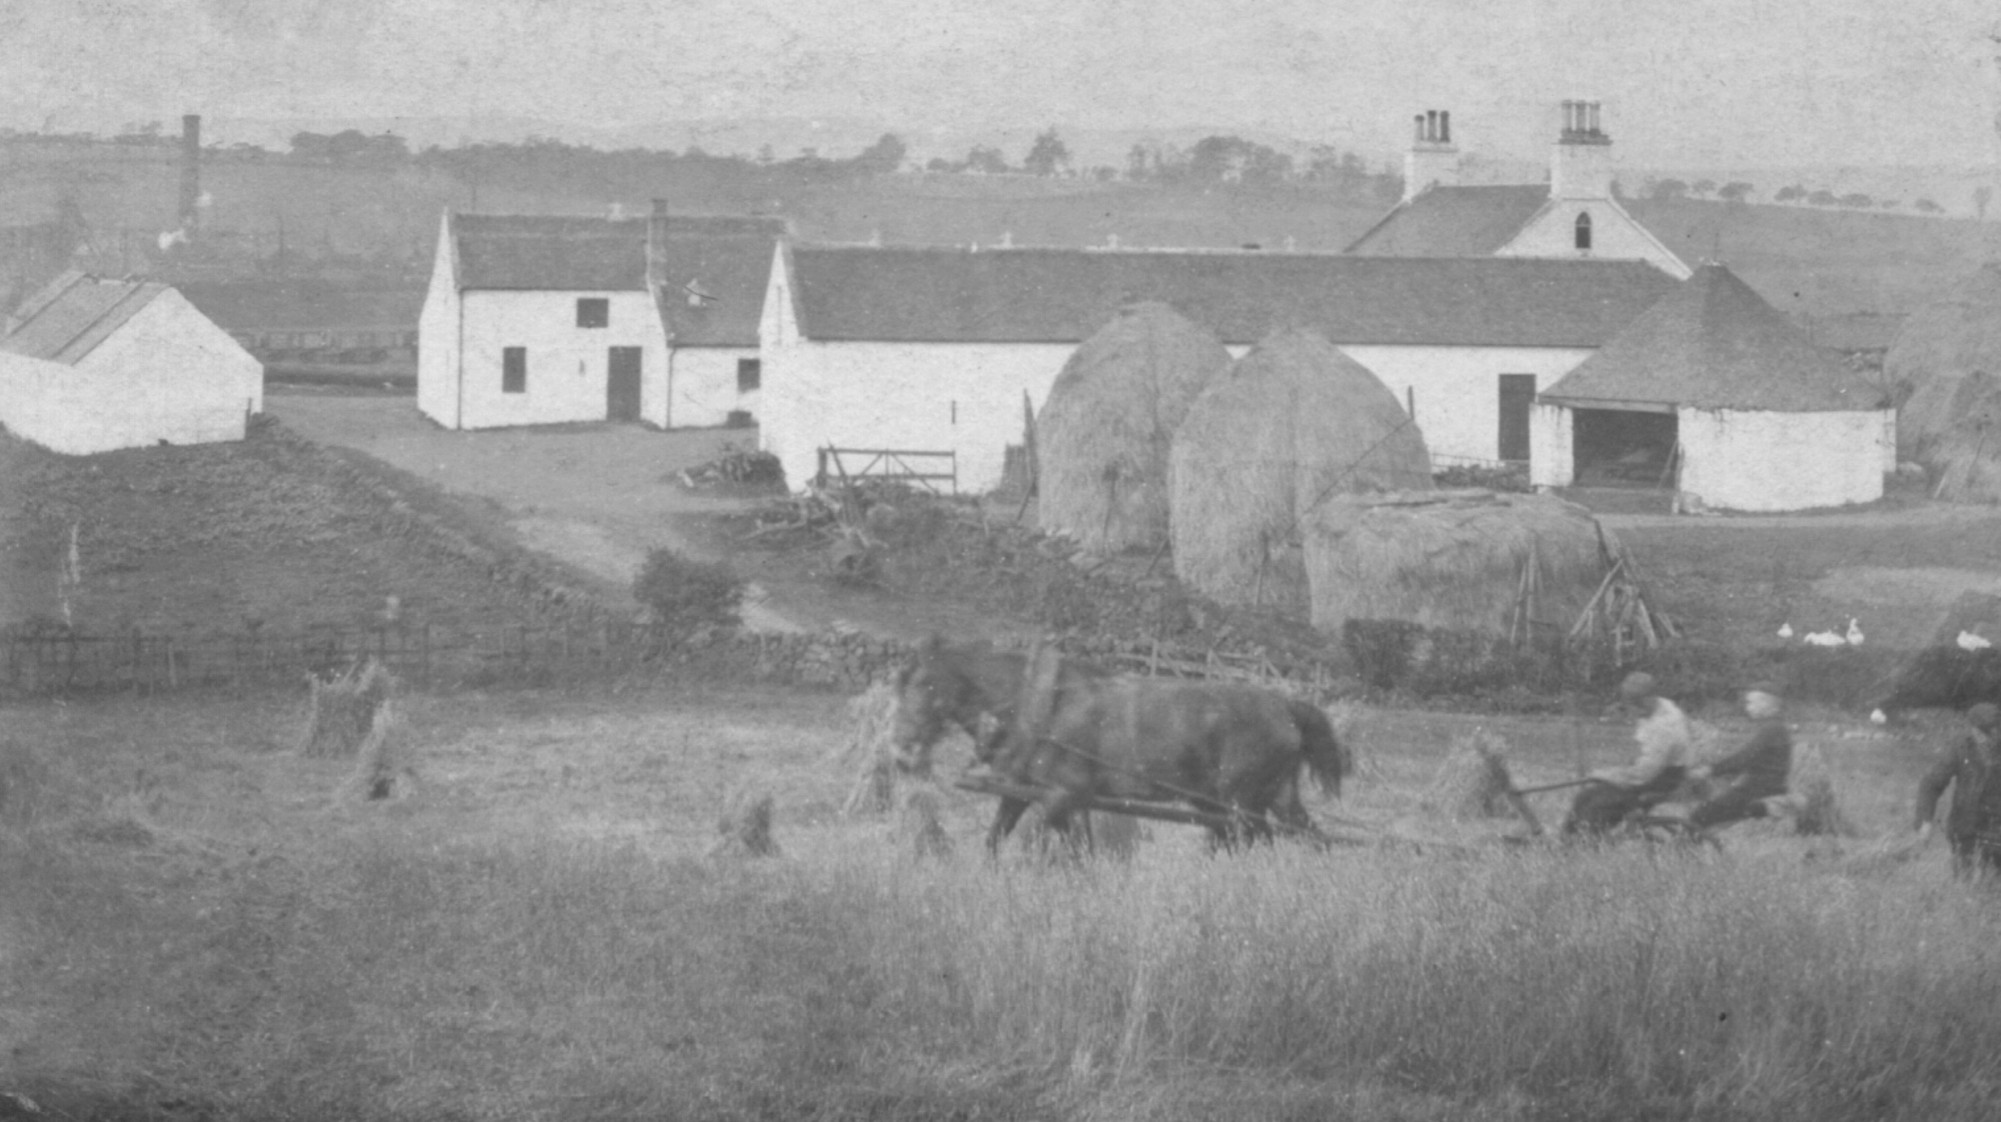 old farmyard, hay ricks and horses